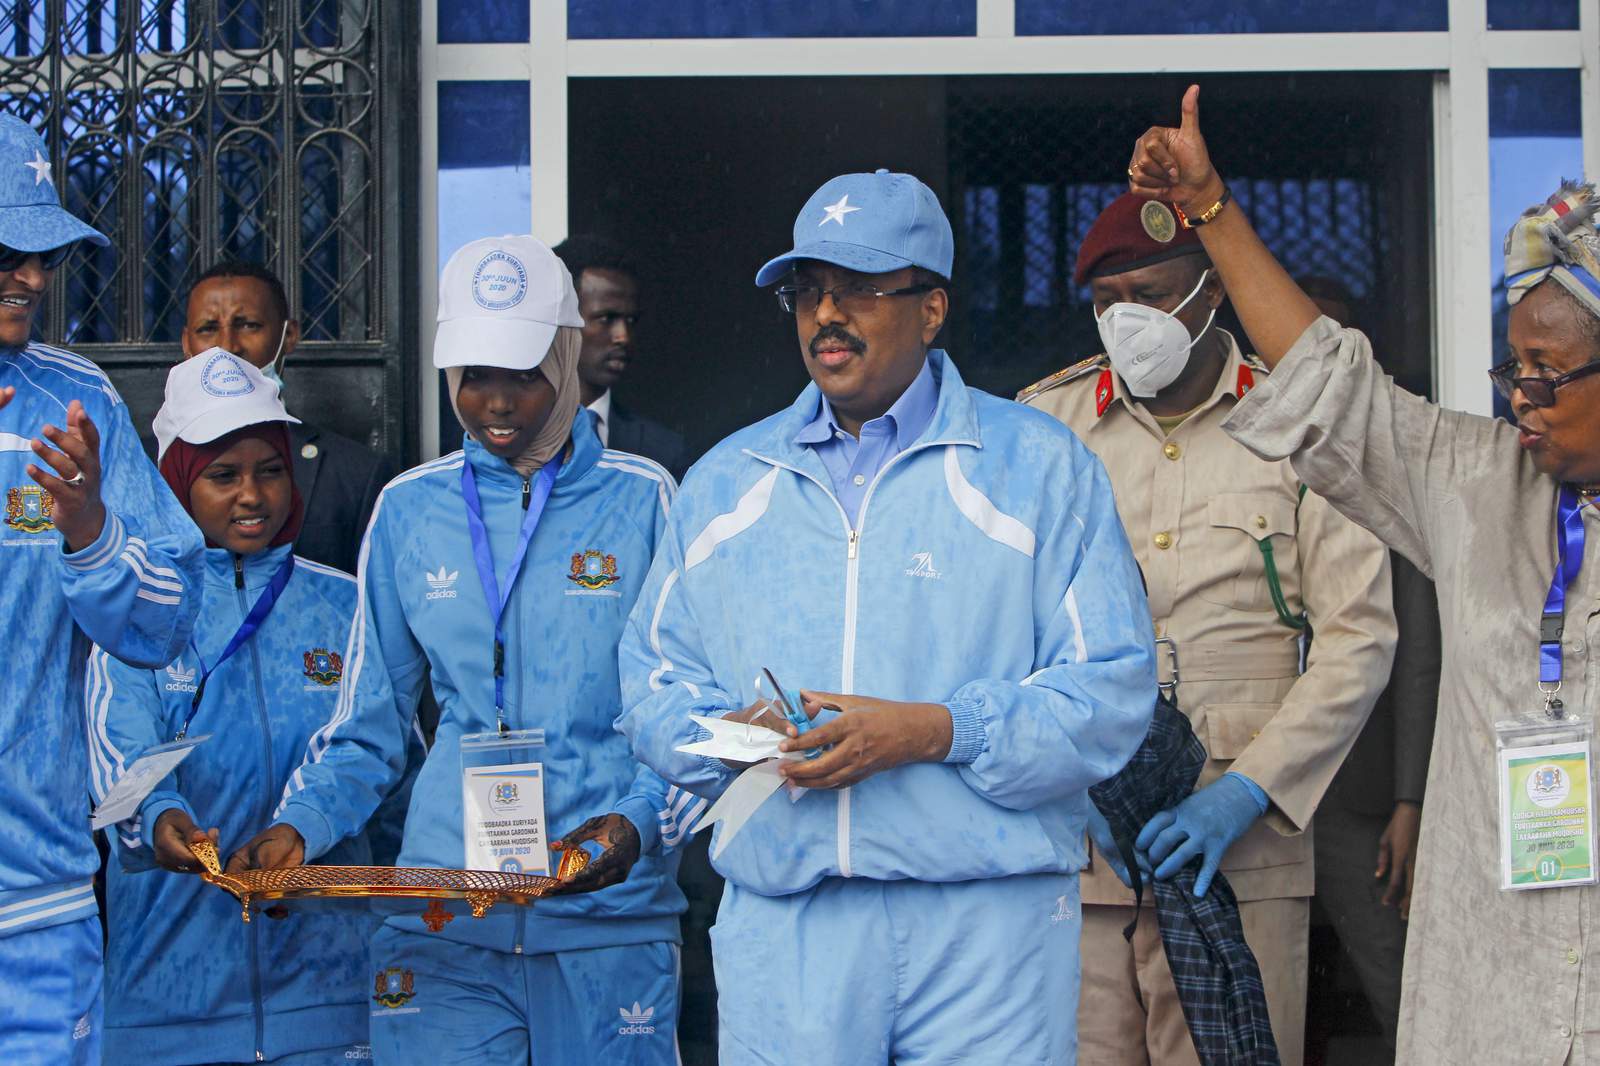 Mortar shells hit after Somalia celebrates reopened stadium